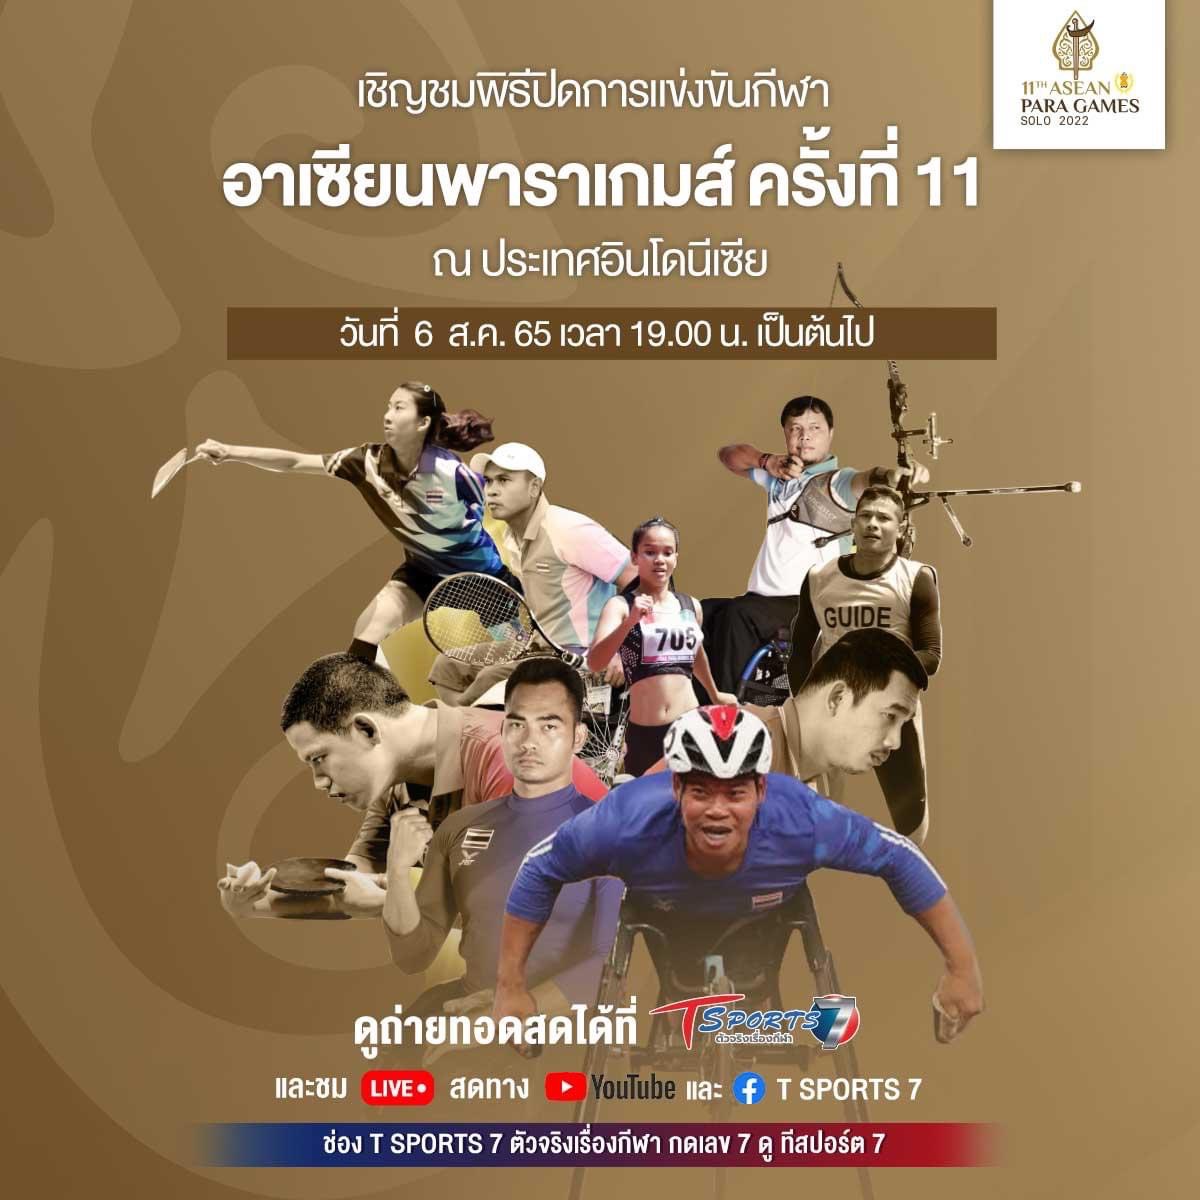 เชิญชม พิธีปิดการแข่งขันกีฬาอาเซียนพาราเกมส์ ครั้งที่ 11 ณ ประเทศอินโดนีเซีย  วันที่ 6 ส.ค. 65 เวลา 19.00 น. เป็นต้นไป – ข่าวกีฬา